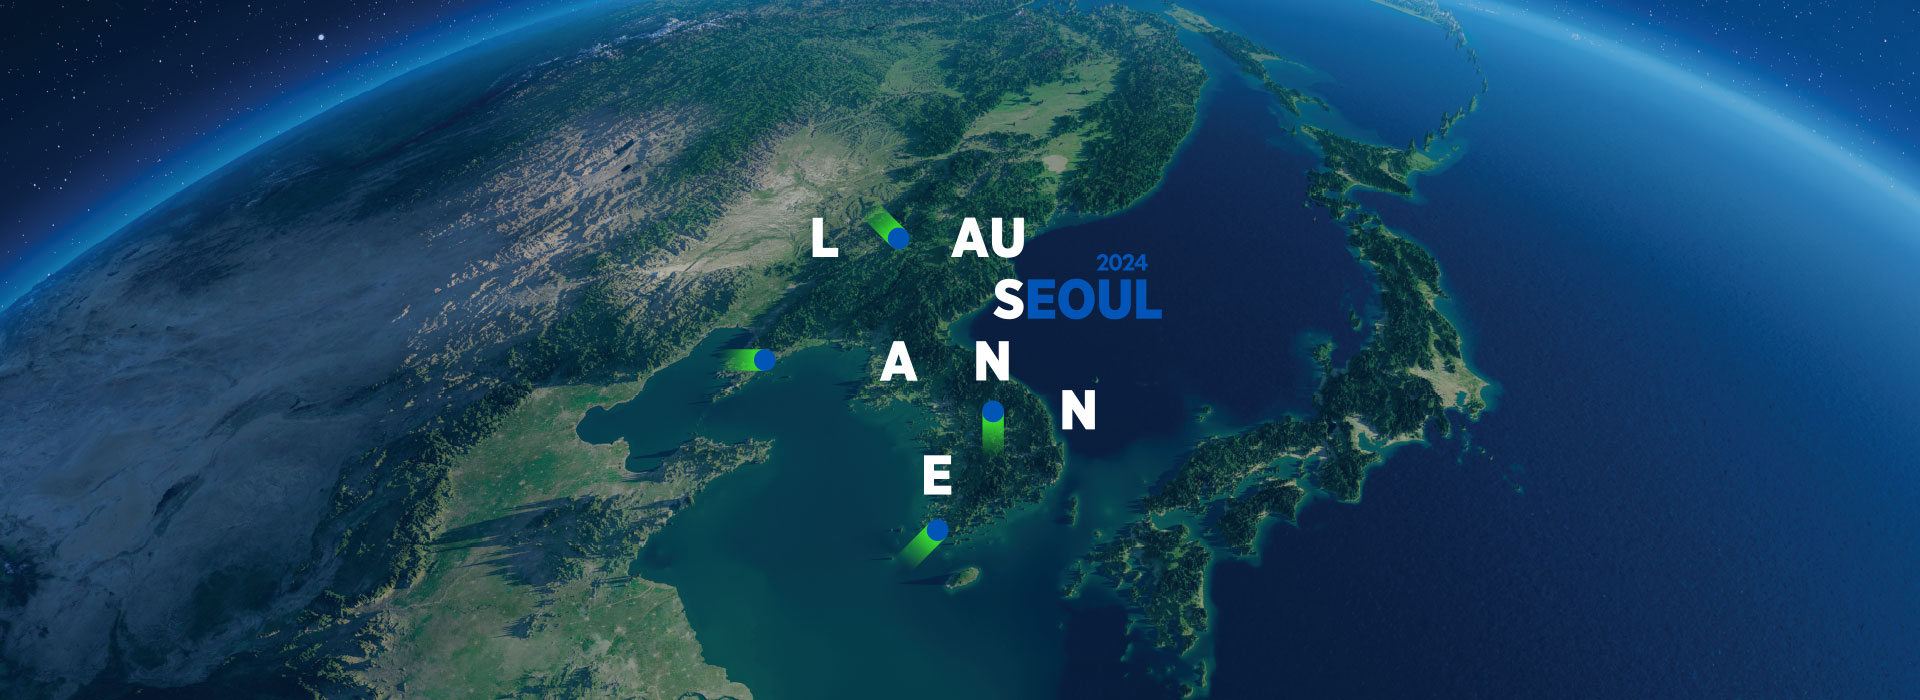 Lausanne 2024 SEOUL